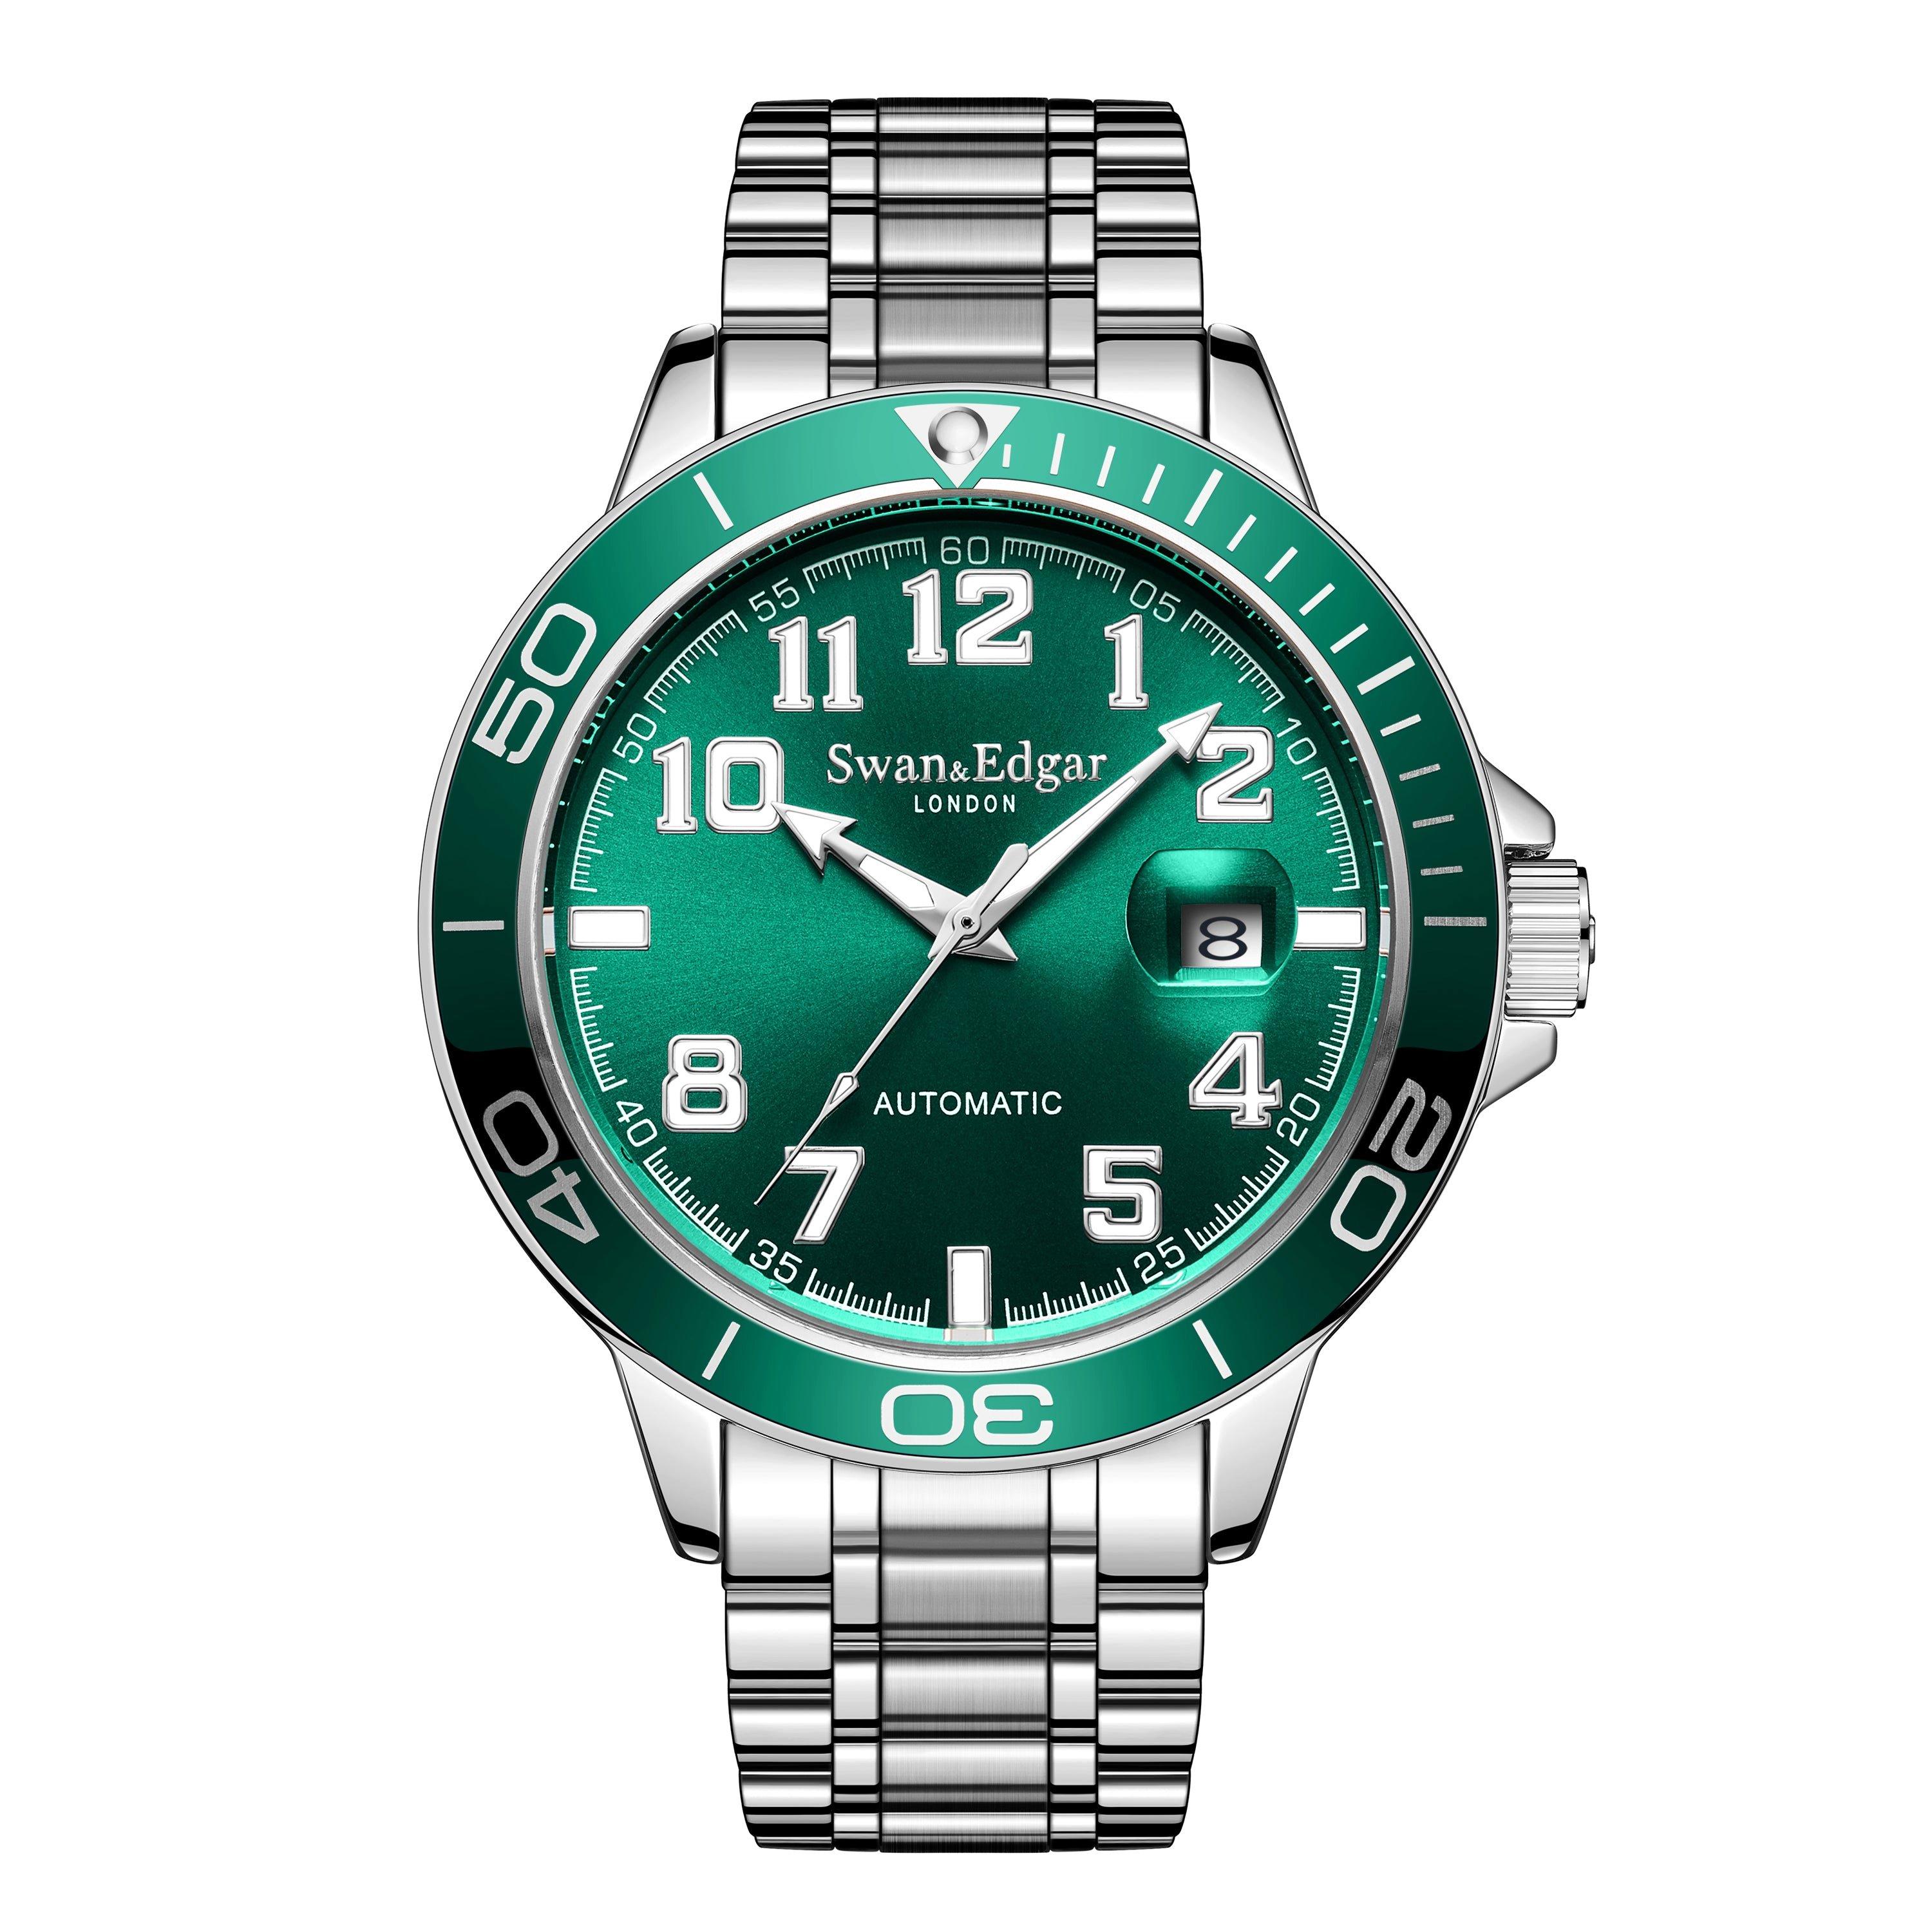 Автоматические часы Conquest ручной сборки Swan & Edgar ограниченной серии, зеленый мужские часы rhythm automatic a1104l02